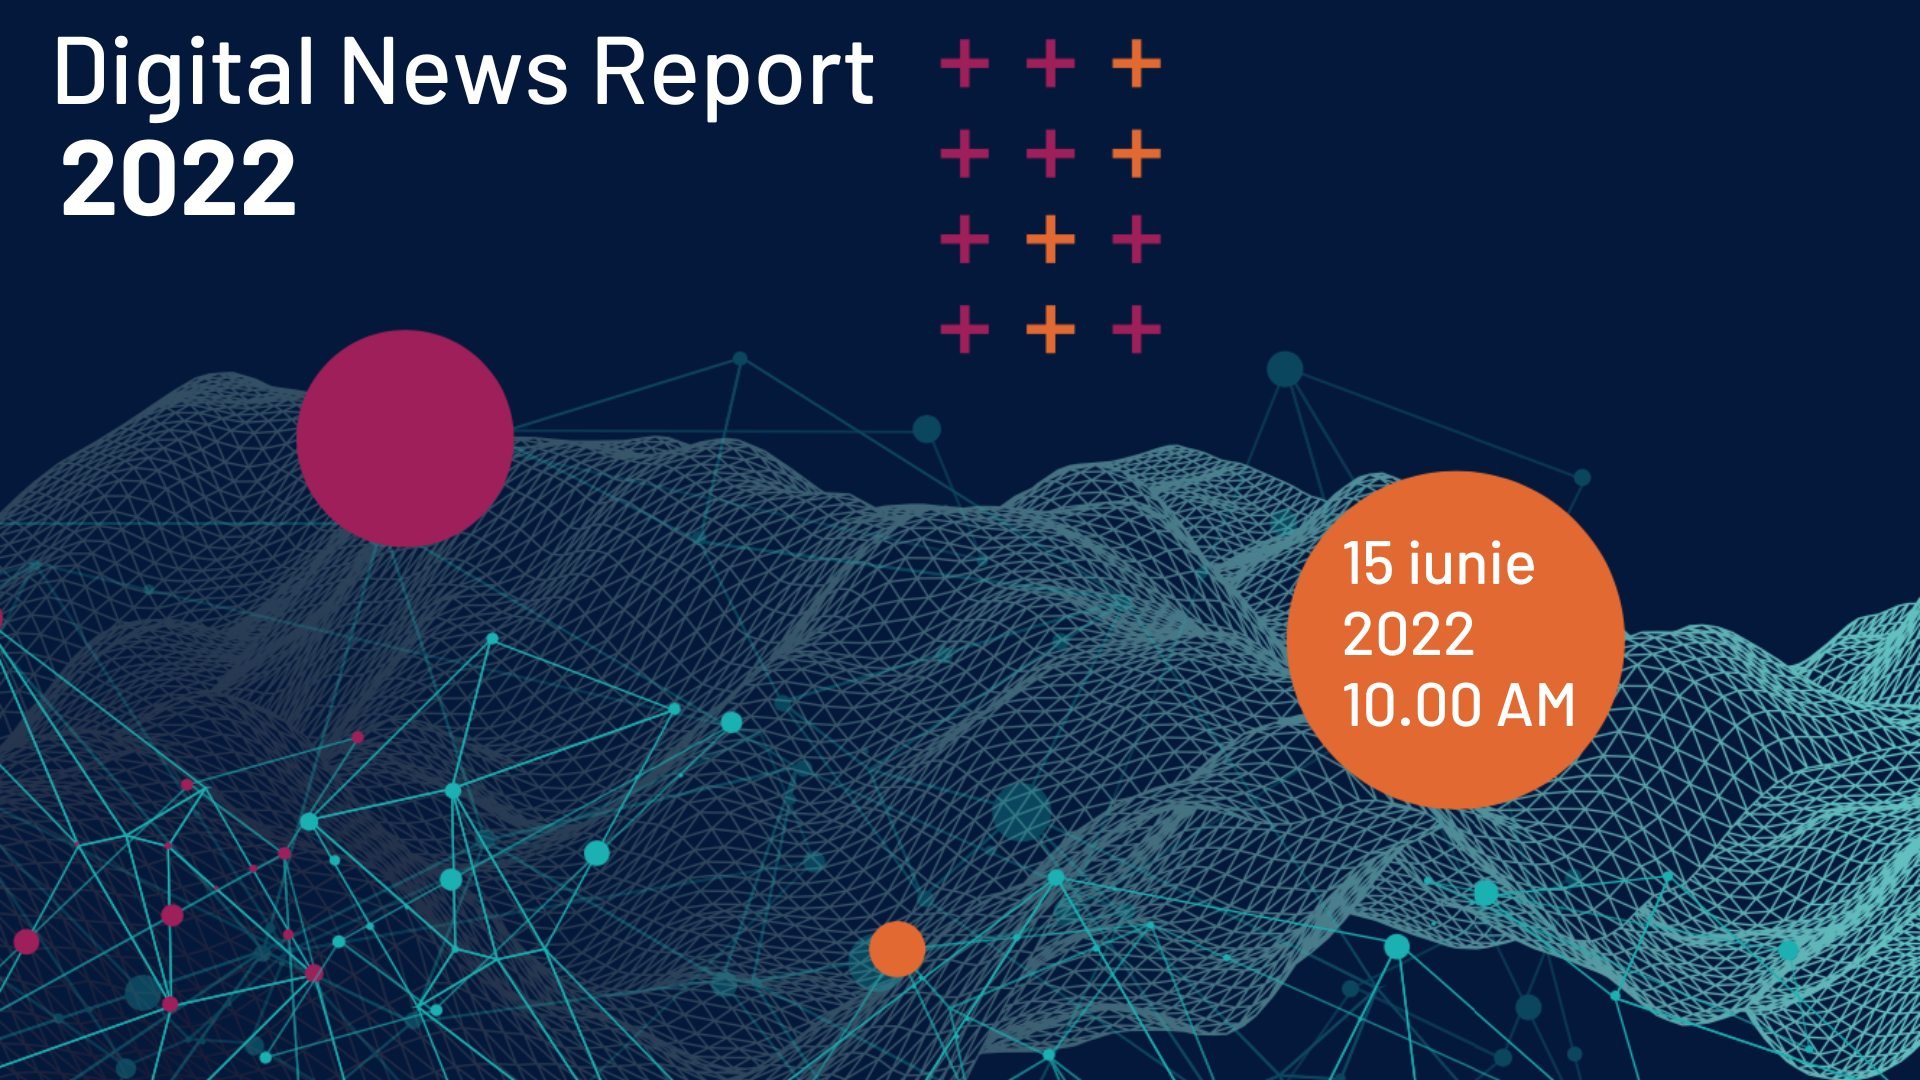  Digital News Report 2022 – cel mai mare studiu multianual internaţional de cercetare a consumului de informaţie – se lansează miercuri, 15 iunie